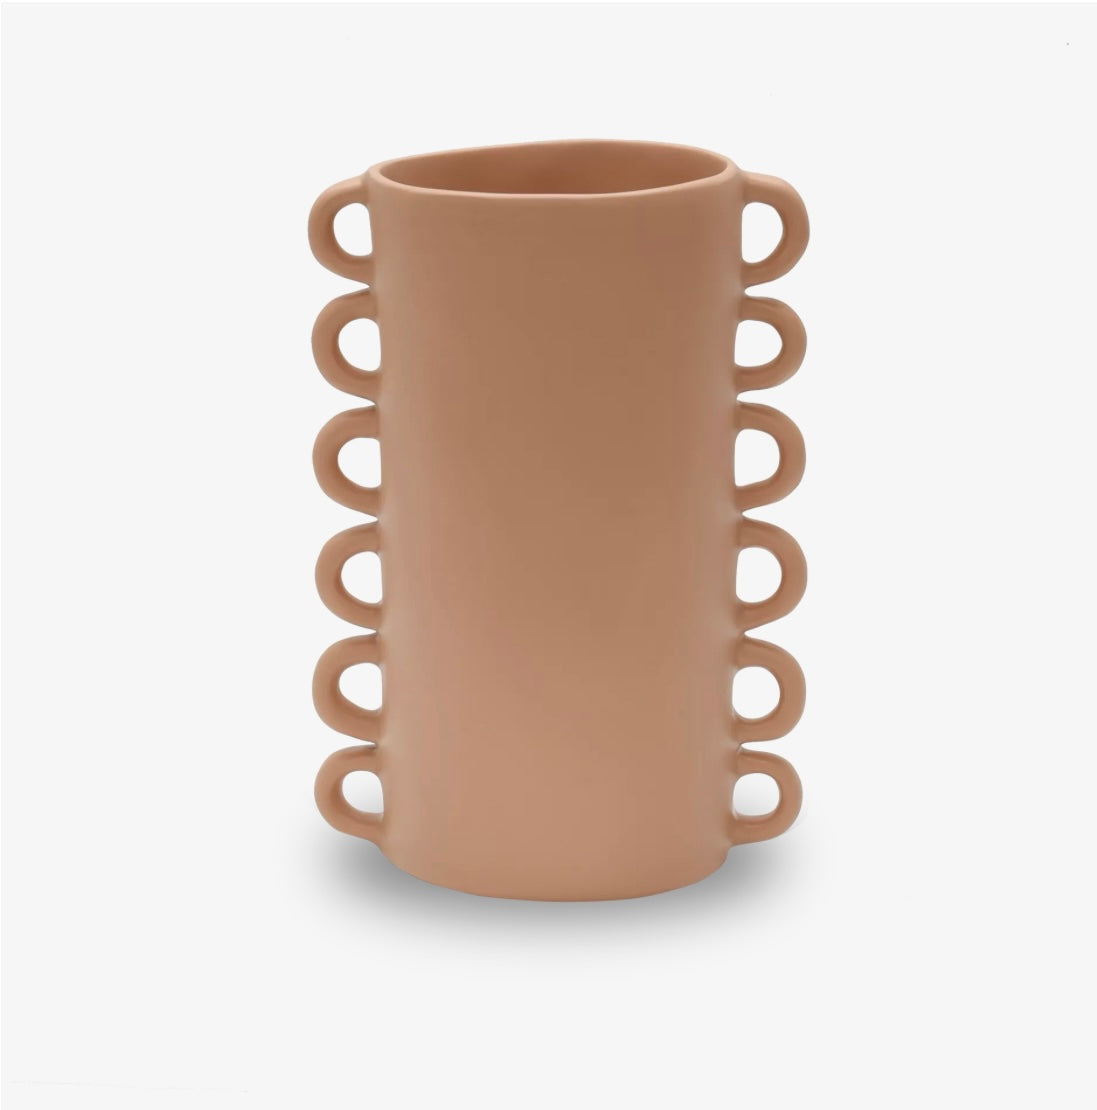 Loopy Vases